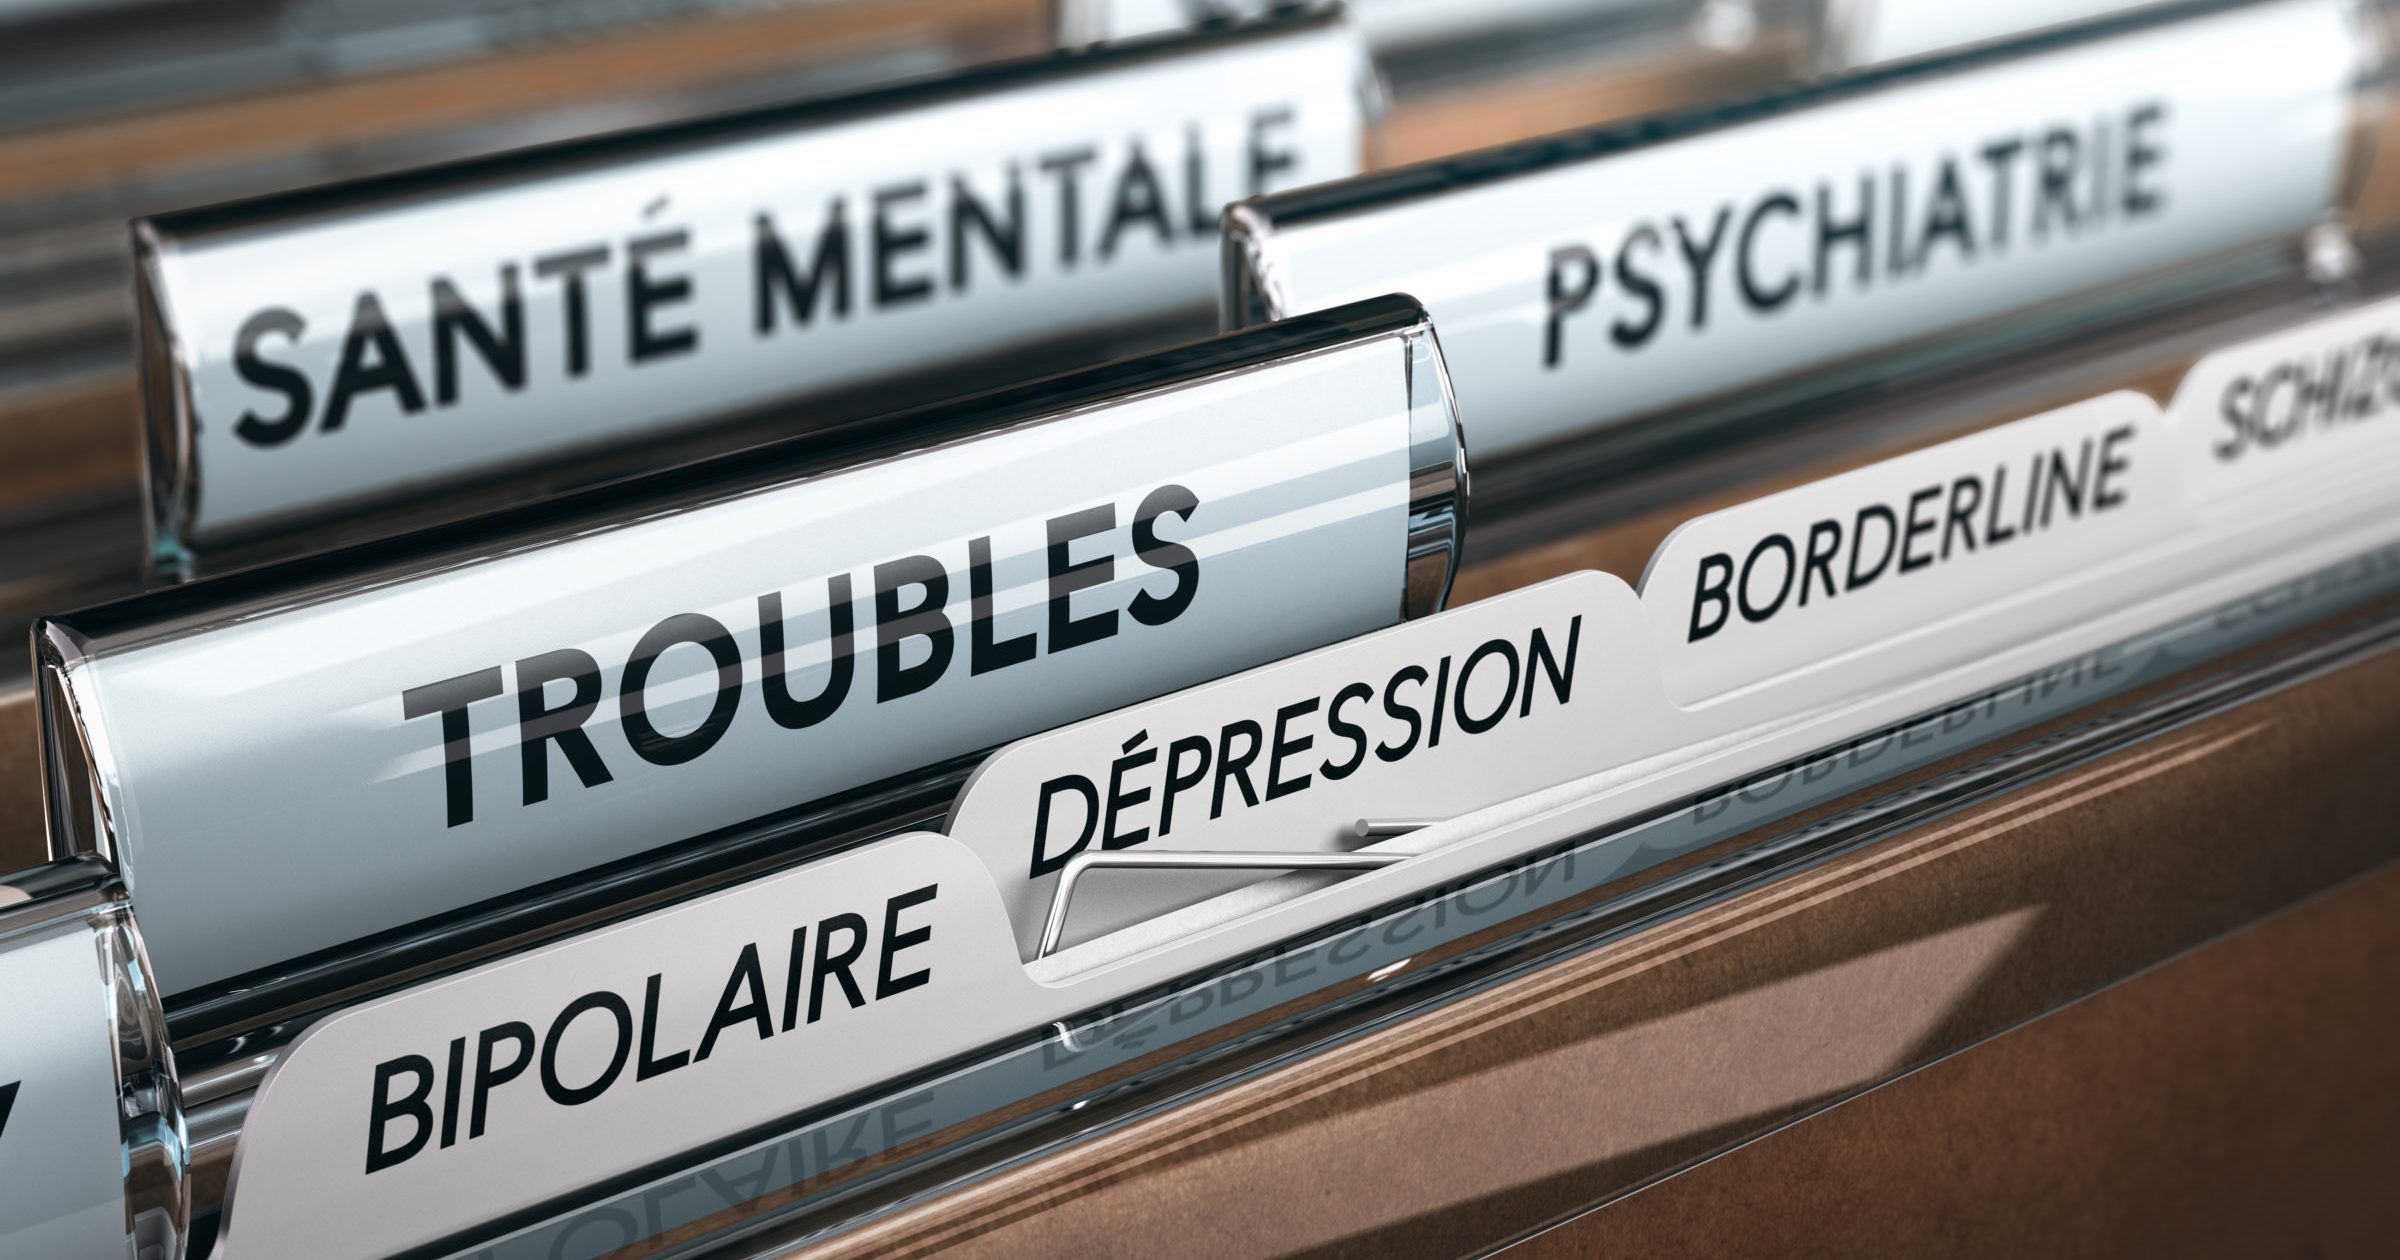 Santé Mentale et Dysfonctionnement Psychologique, Liste des Troubles Psychiques et du Comportement